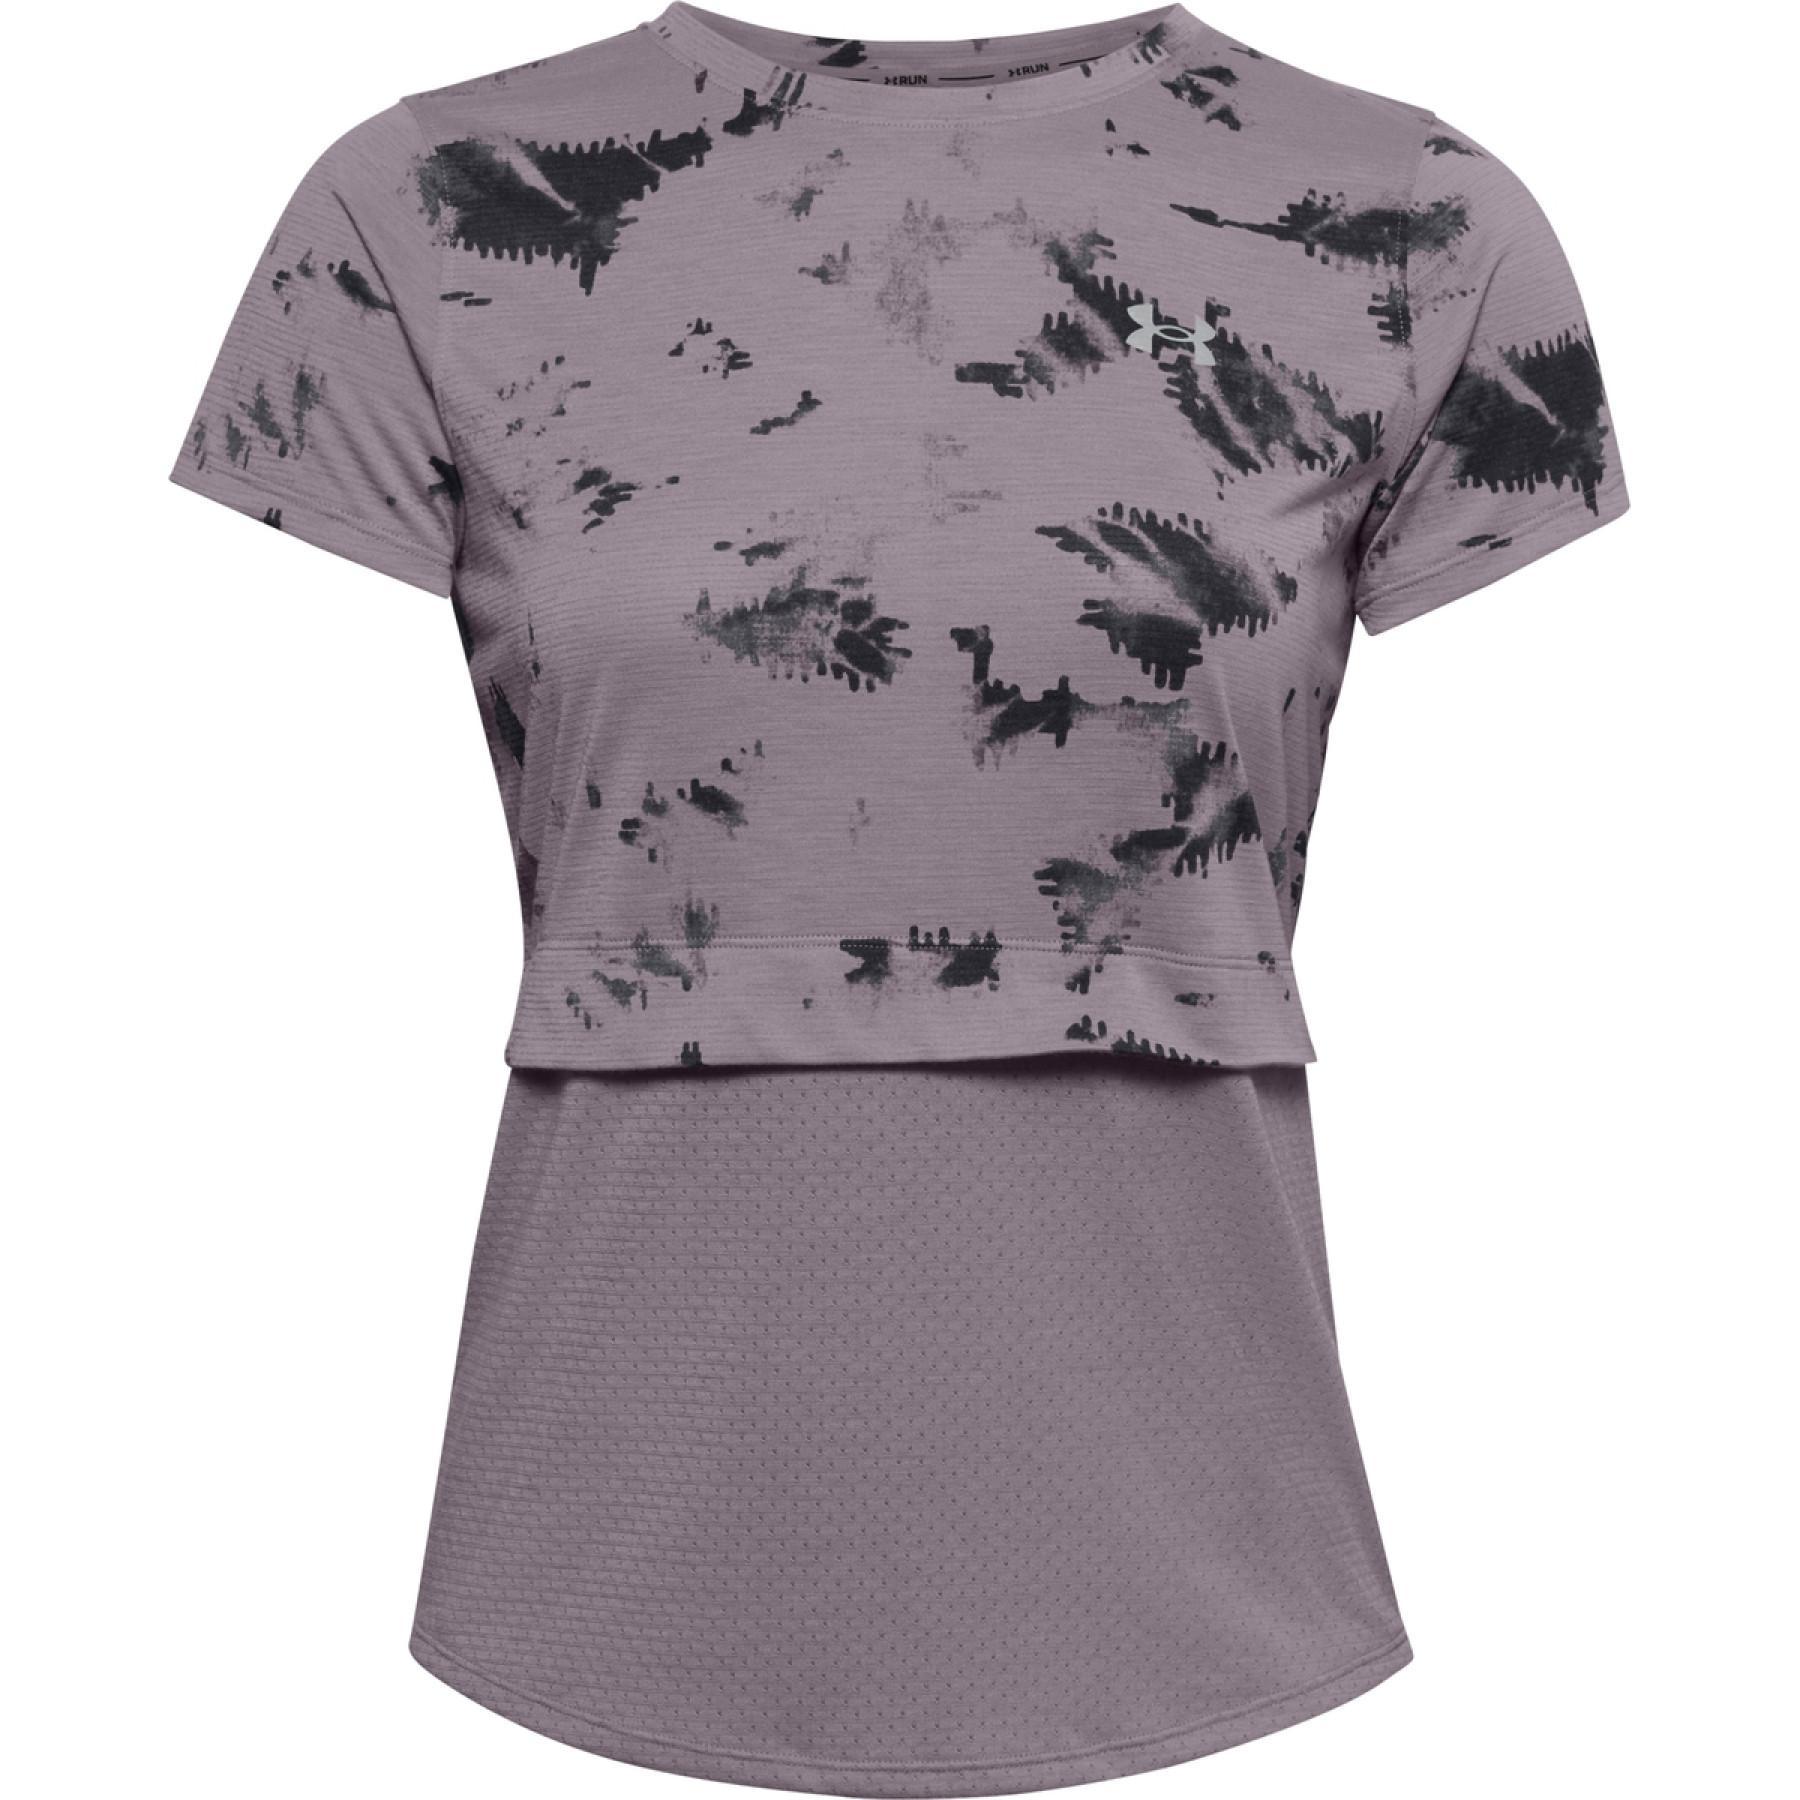 Camiseta feminina Under Armour à manches courtes Streaker 2.0 Inverse